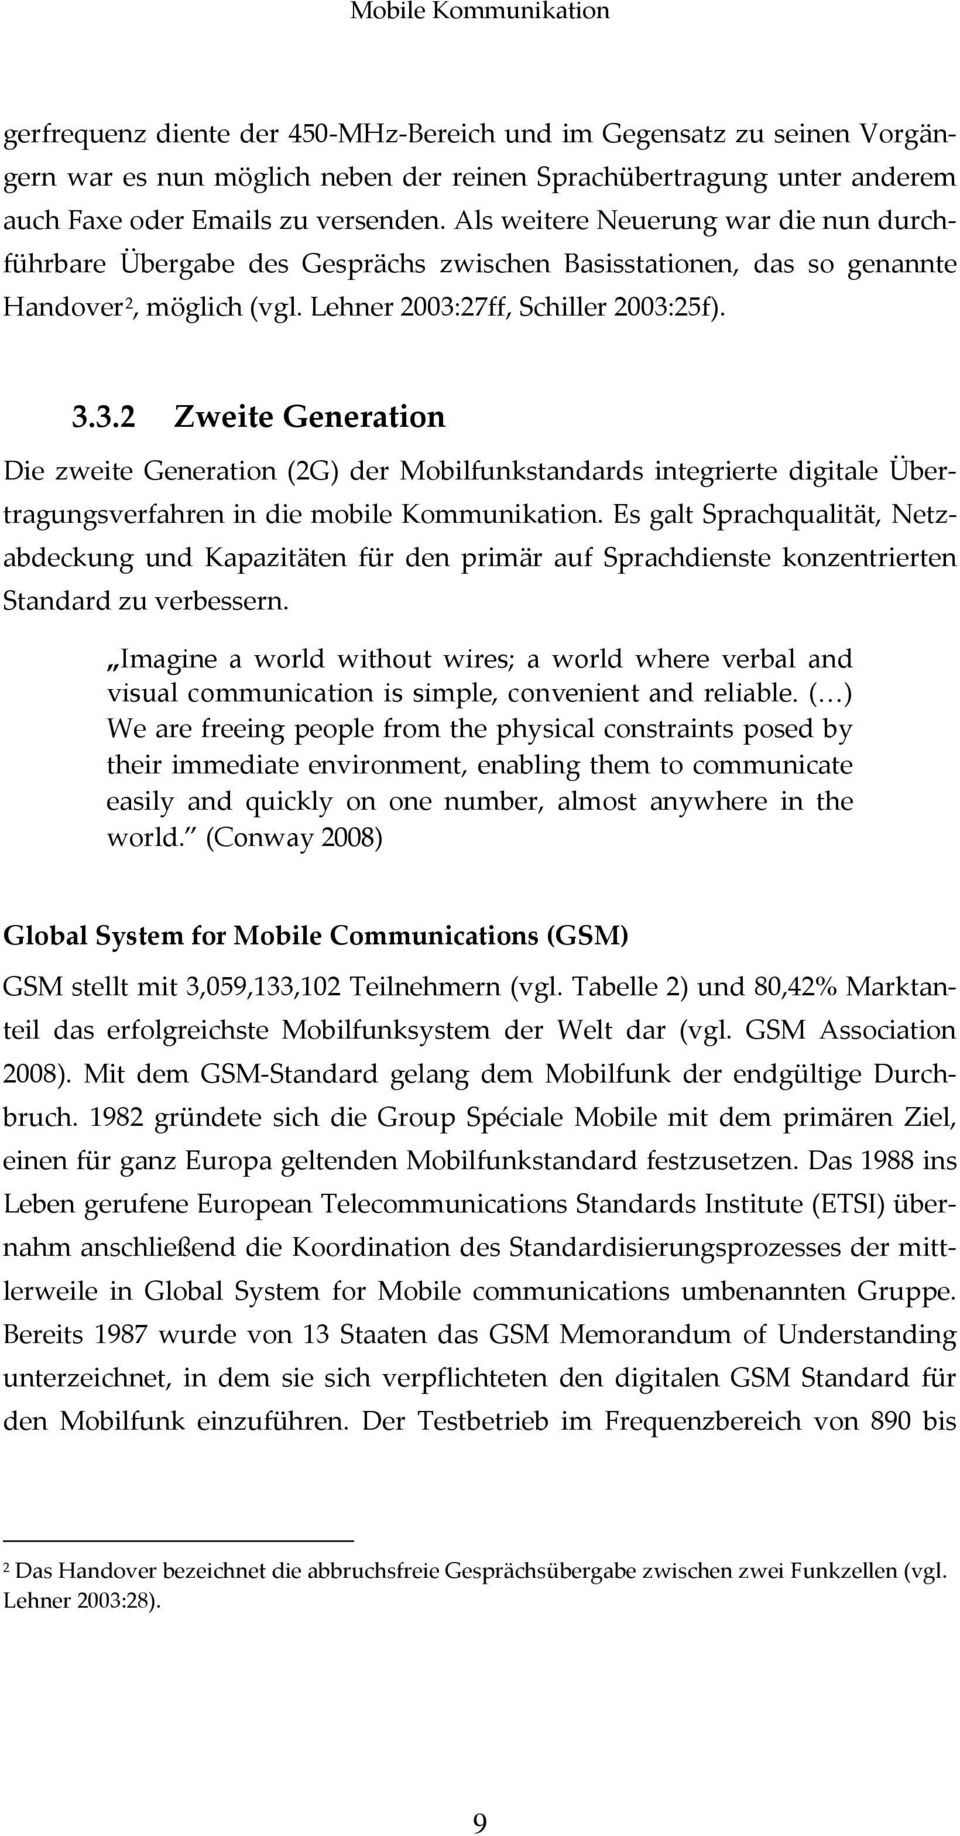 27ff, Schiller 2003:25f). 3.3.2 Zweite Generation Die zweite Generation (2G) der Mobilfunkstandards integrierte digitale Übertragungsverfahren in die mobile Kommunikation.